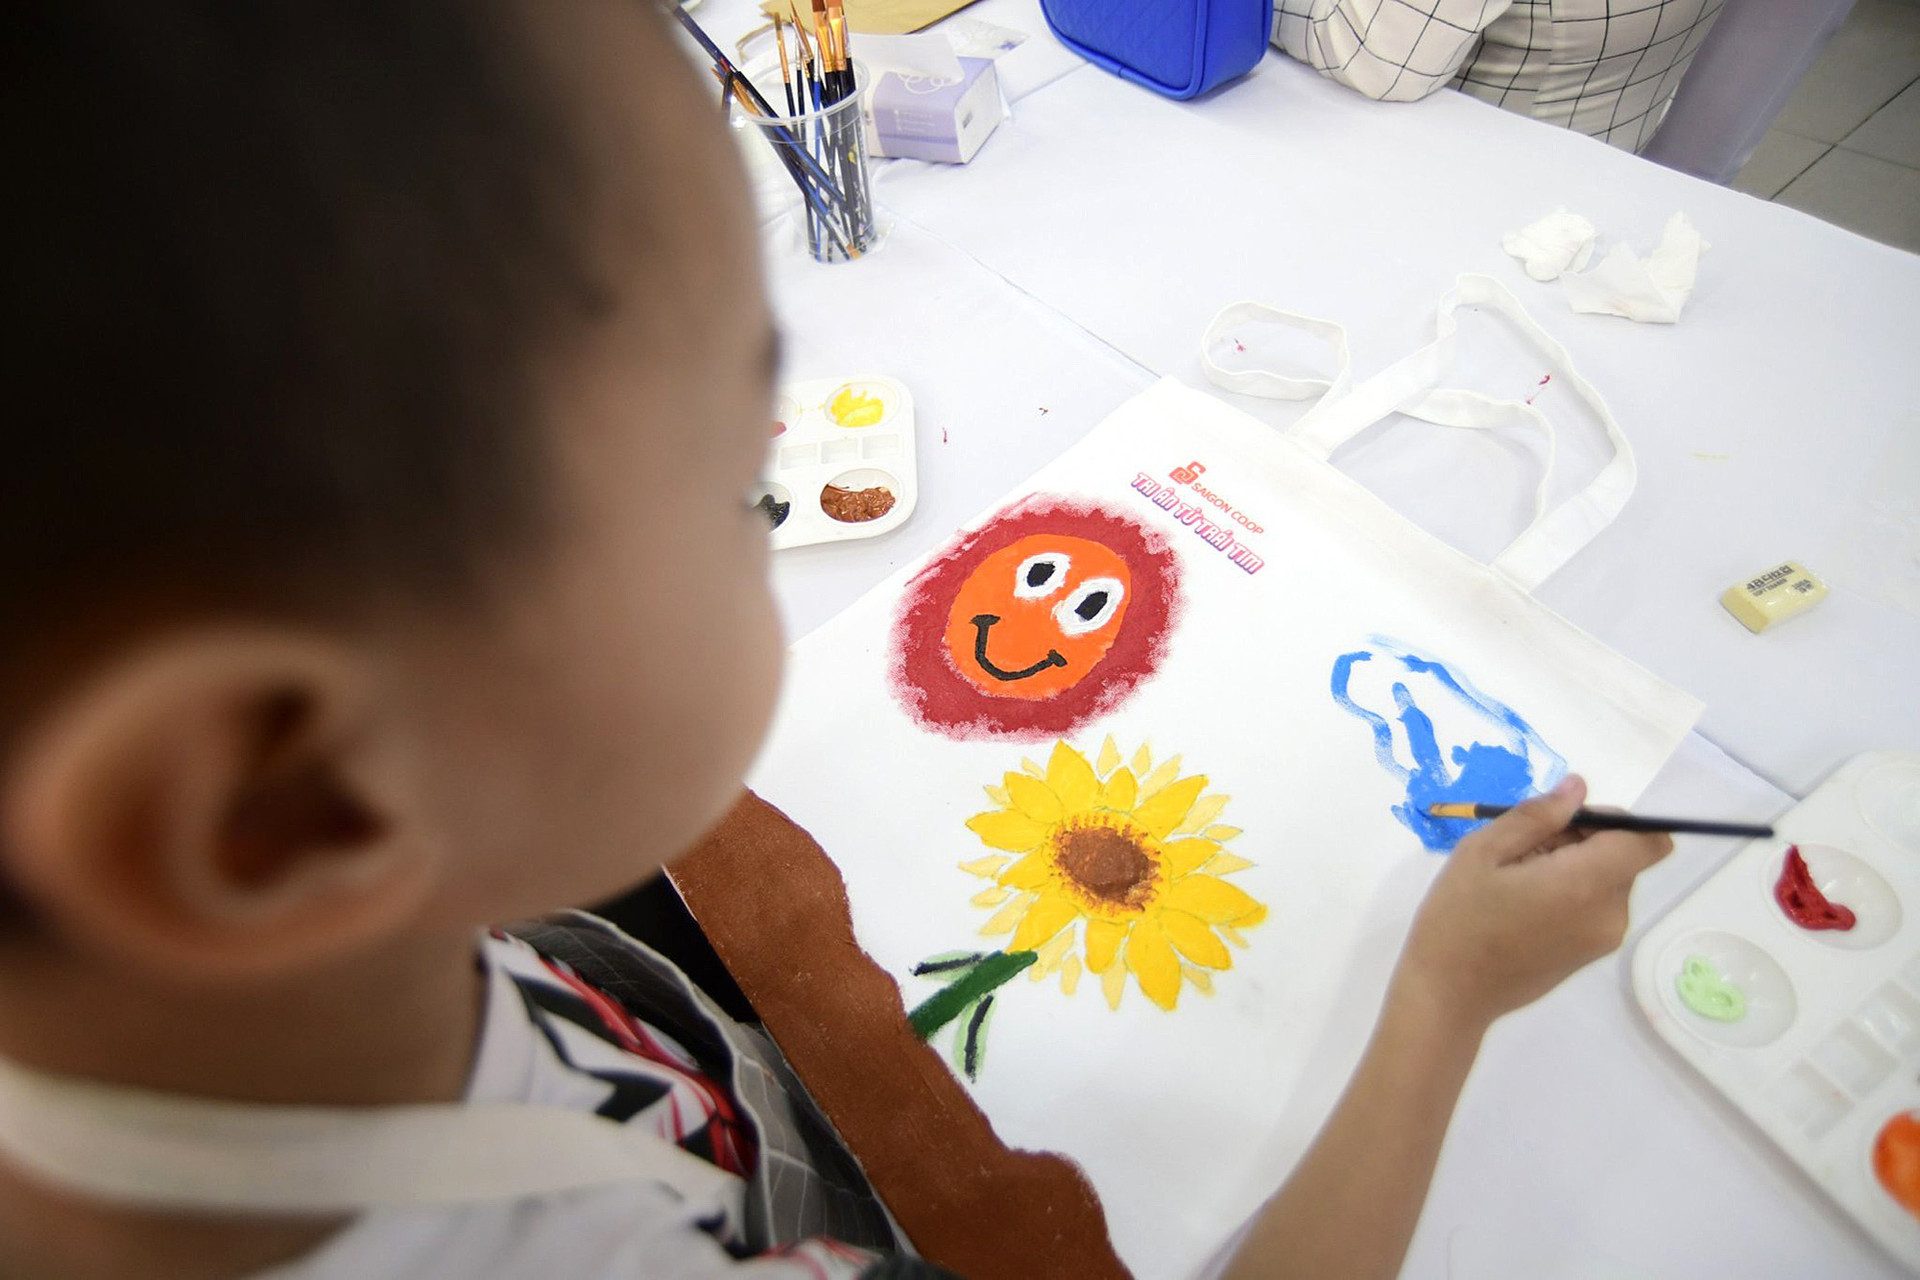 Chuyên gia khuyến cáo lựa chọn đồ chơi an toàn phòng tránh nhiễm chì cho trẻ - Ảnh minh họa: Q.ĐỊNH